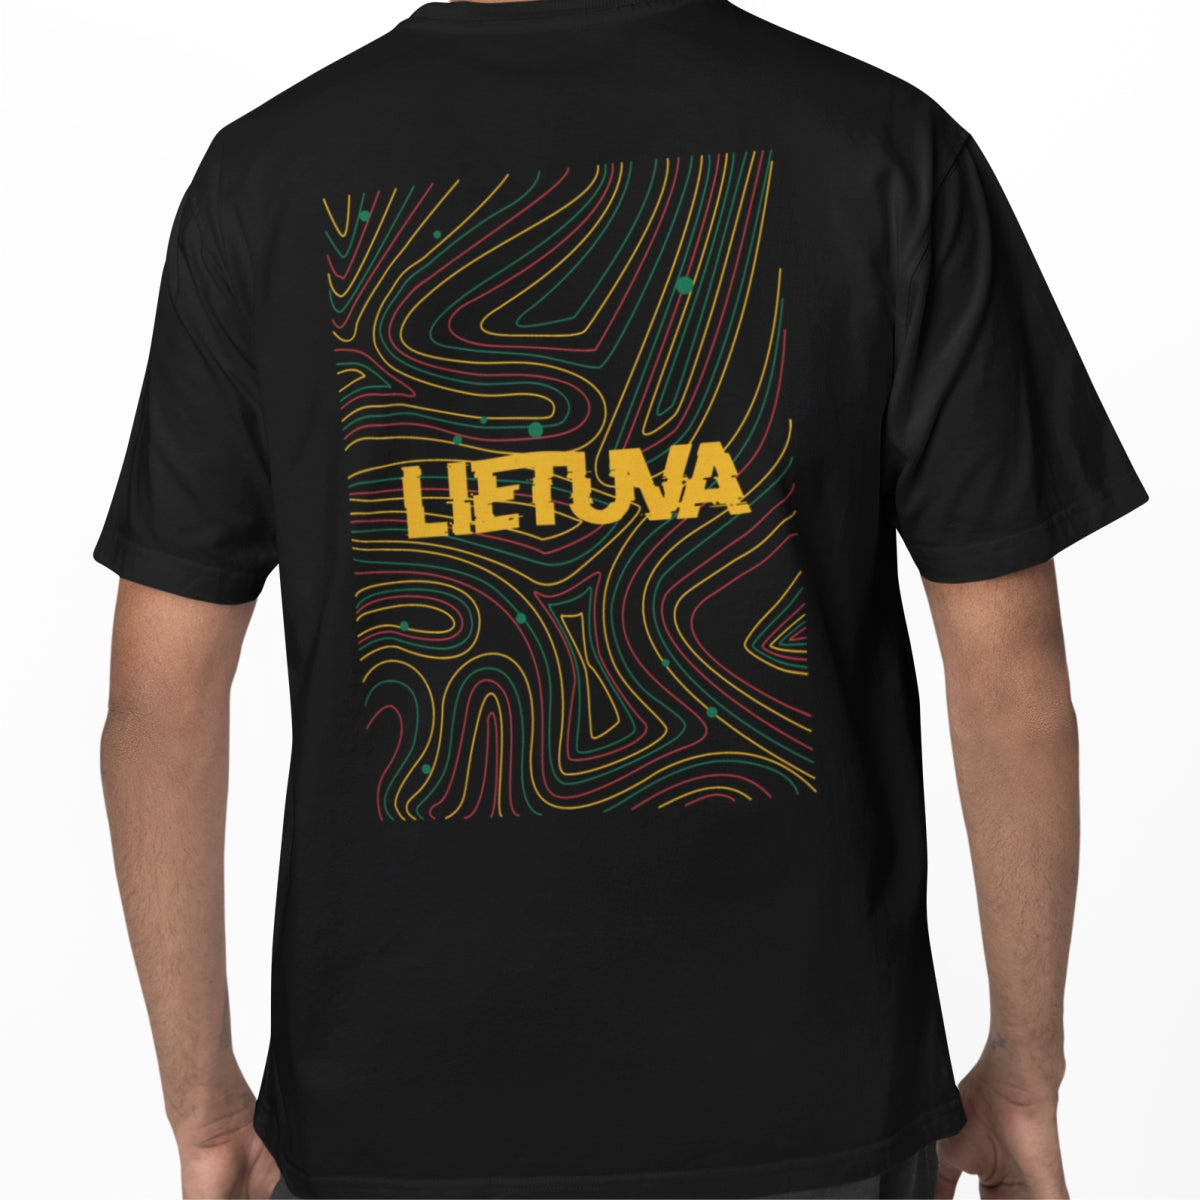 Juodi UNISEX marškinėliai su spauda ant nugaros  "Lietuvos fonas“